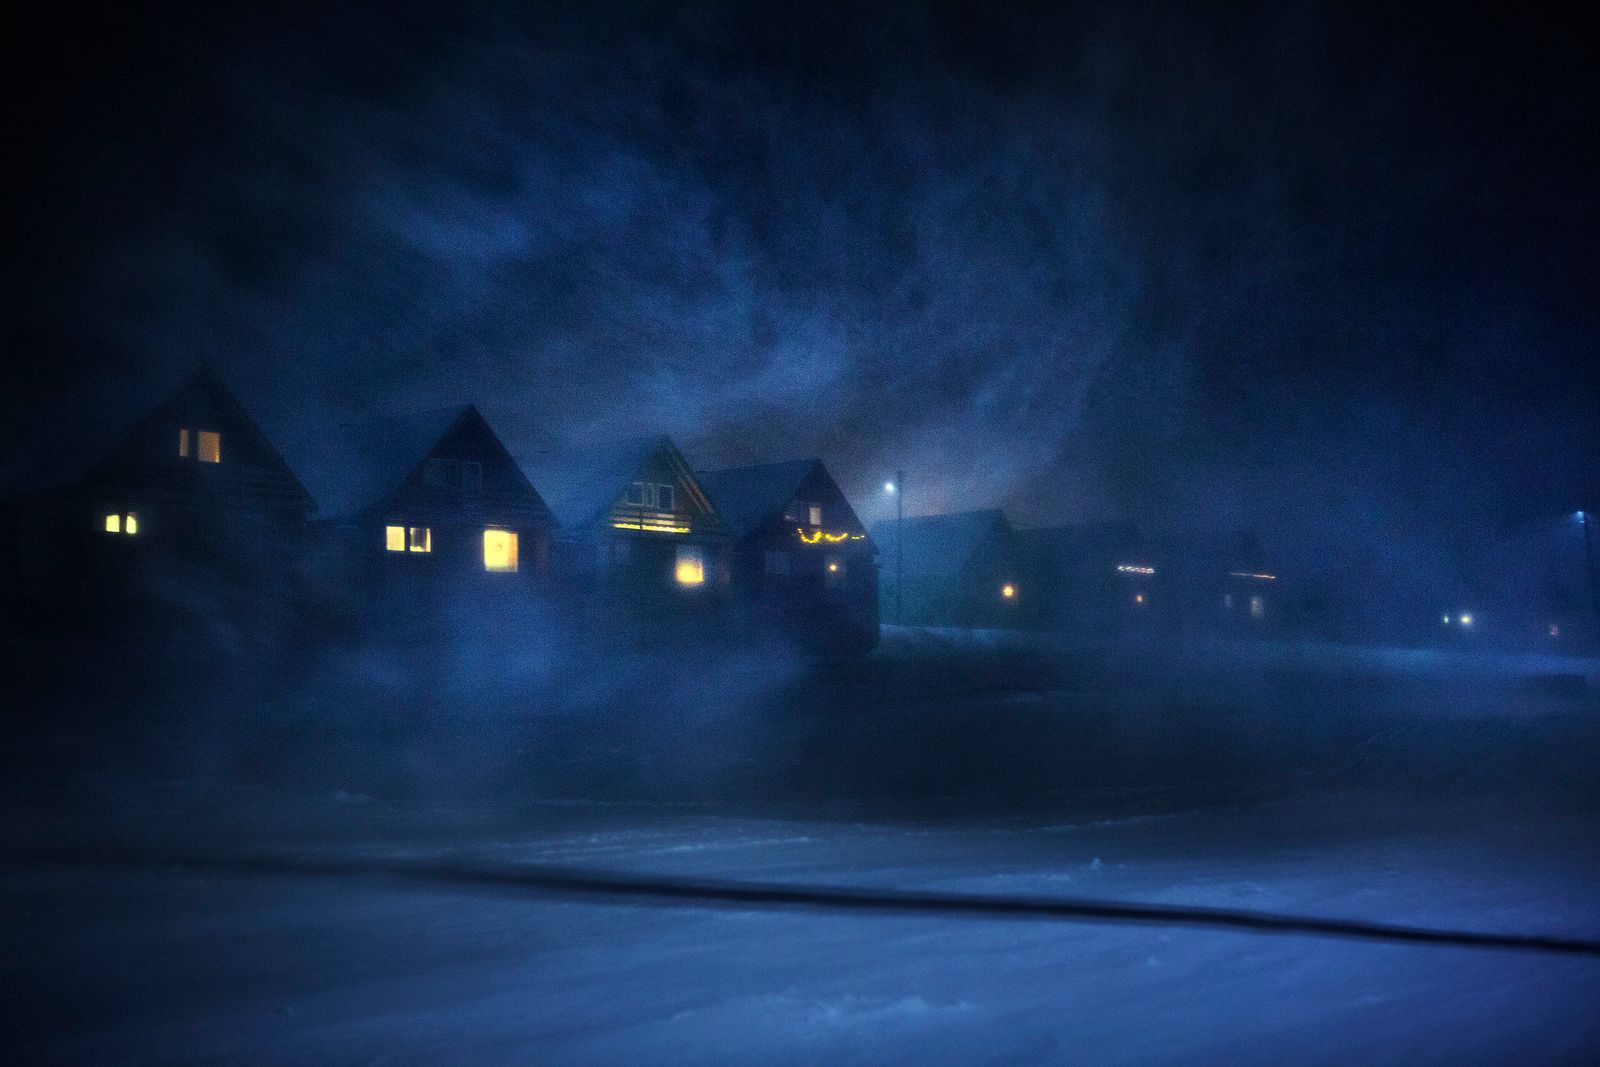 © Axelle de Russé - Snowstorm on Longyeaybyen. November 2018, 2 pm.